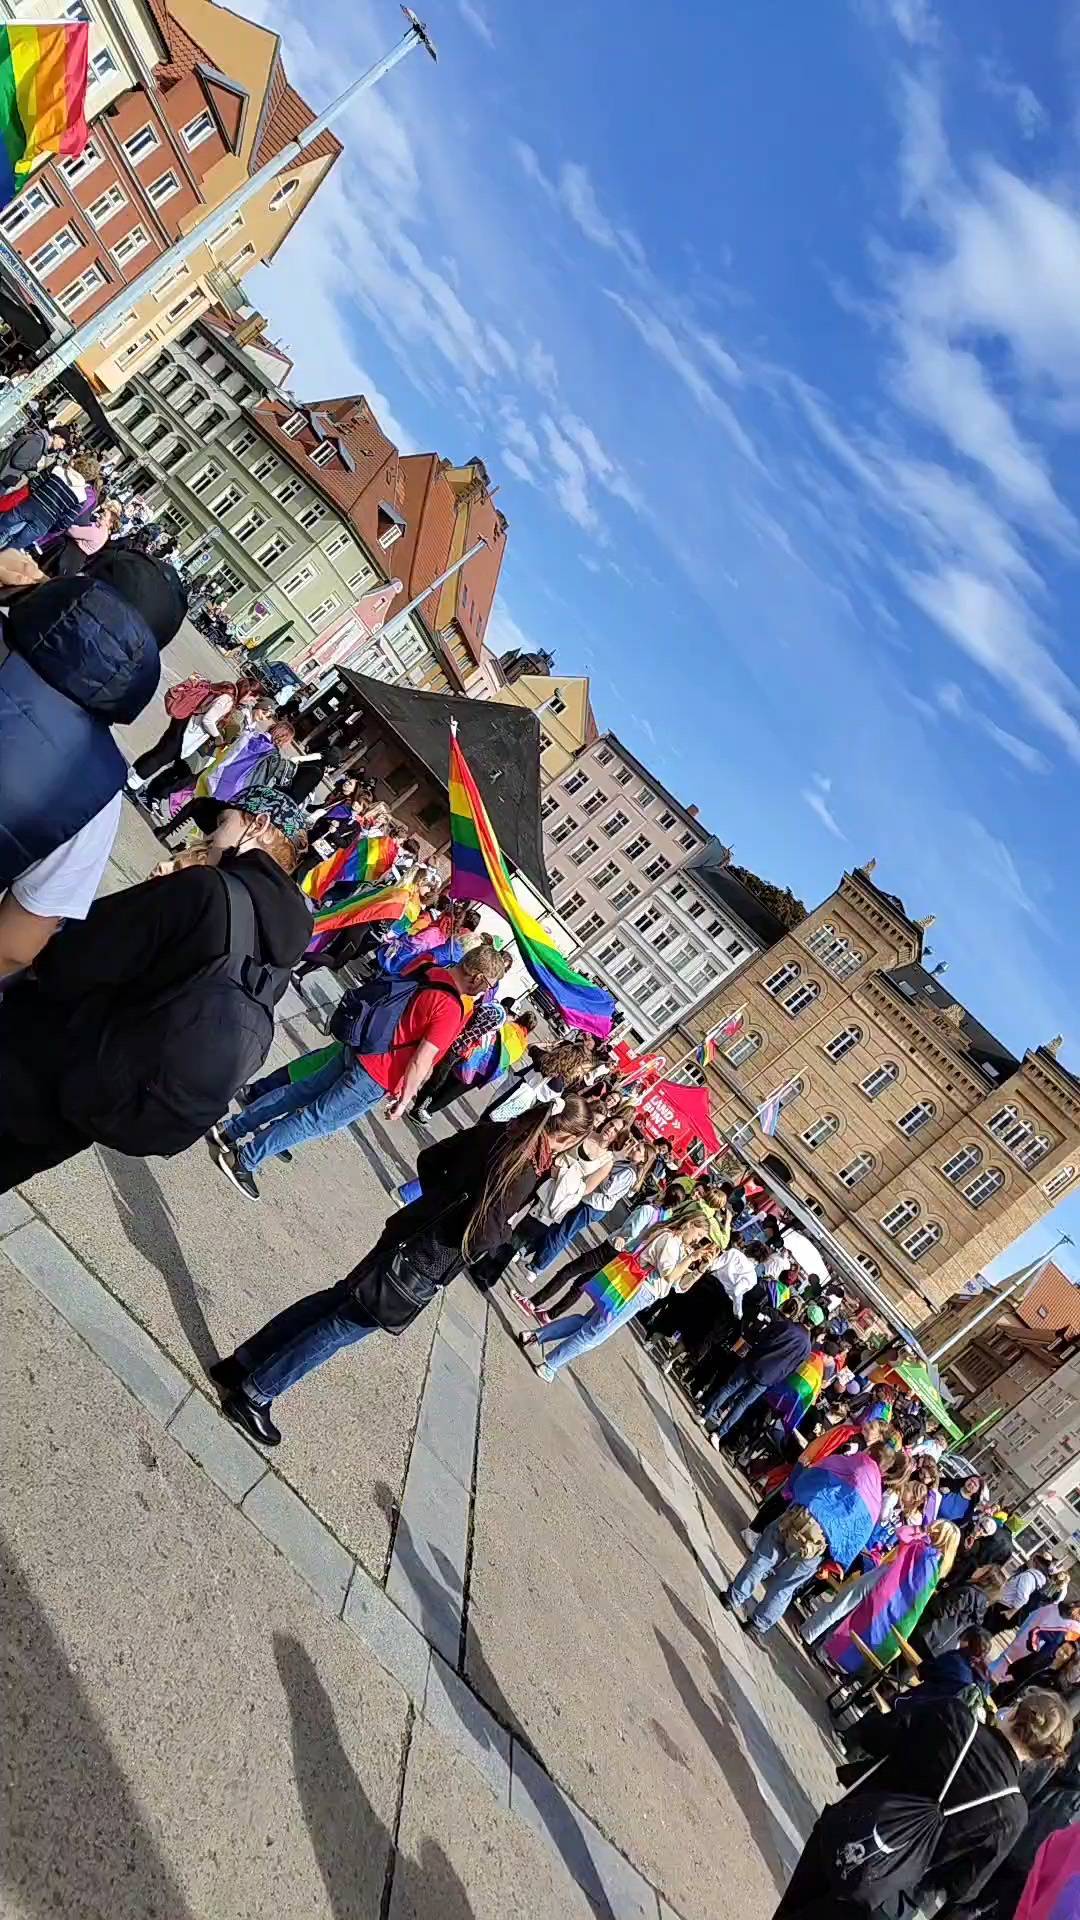 ❤️🧡💛💚💙💜
Ab 14:00 Uhr geht's los mit dem ersten CSD in Stralsund

Kommt noch schnell vorbei und seid mit dabei

#queer #queermv #queer_hgw #queerinmv
#pride #csd #csddeutschland #csdnord #lsvd 
#gay #lesbisch #schwul #bi #trans #inter #andersabernormal